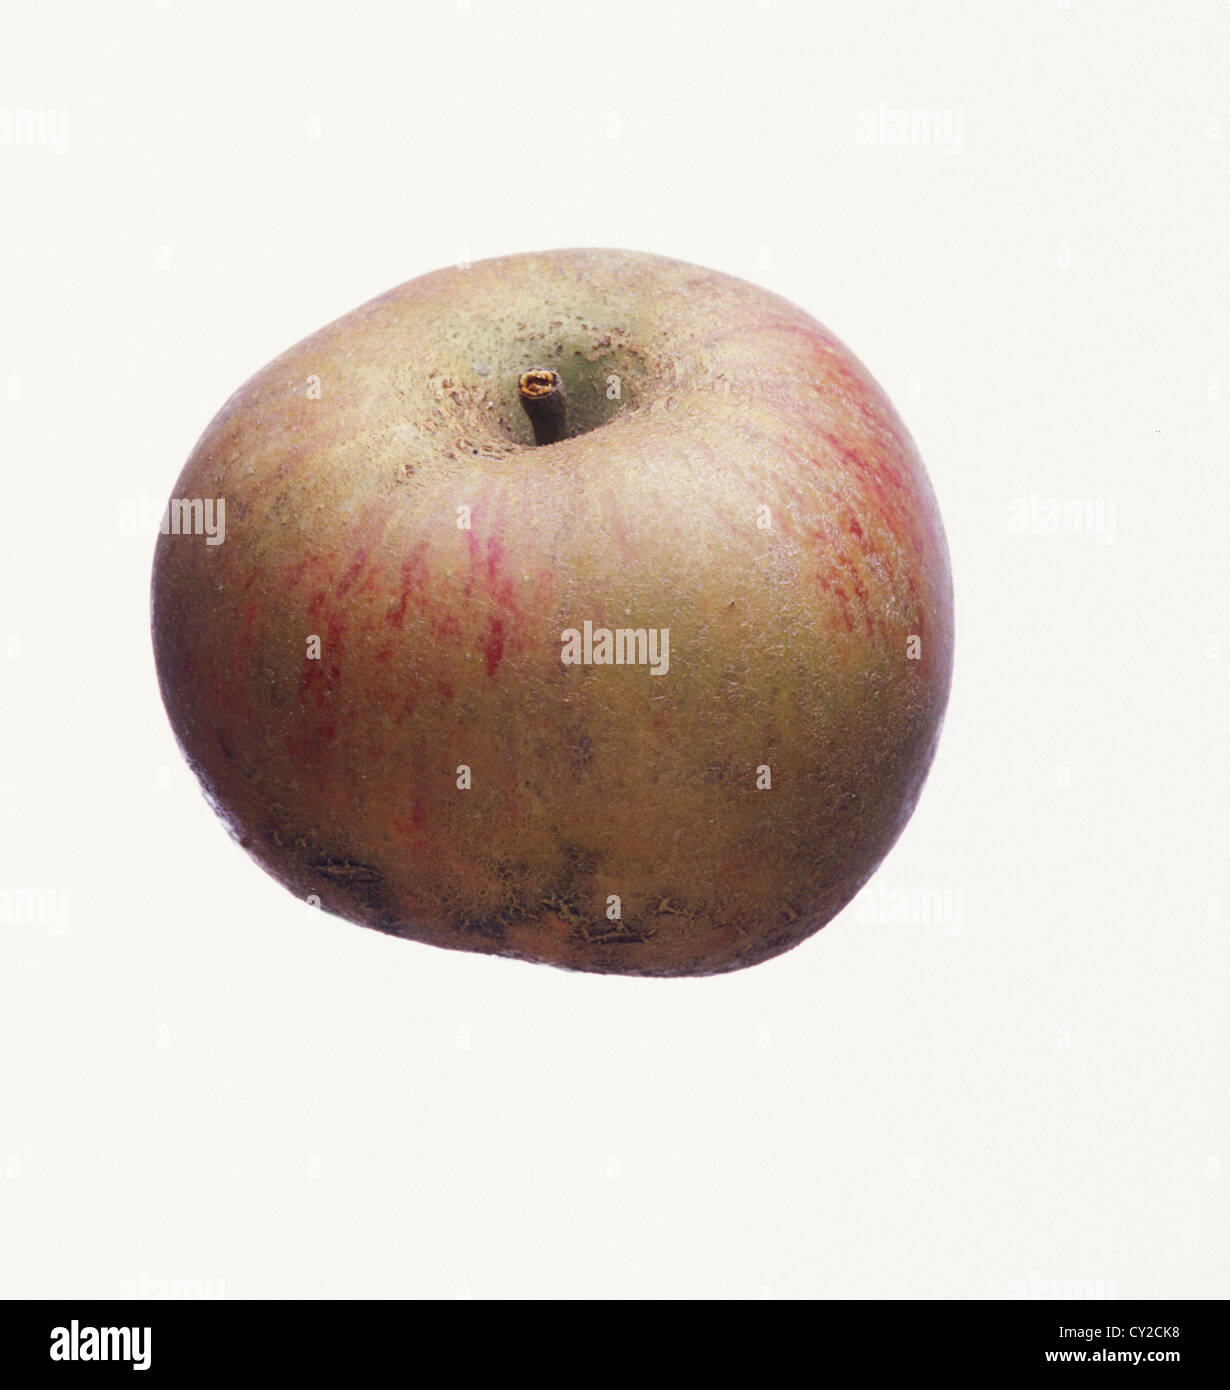 Orleans Reinette, UK apple. Stock Photo